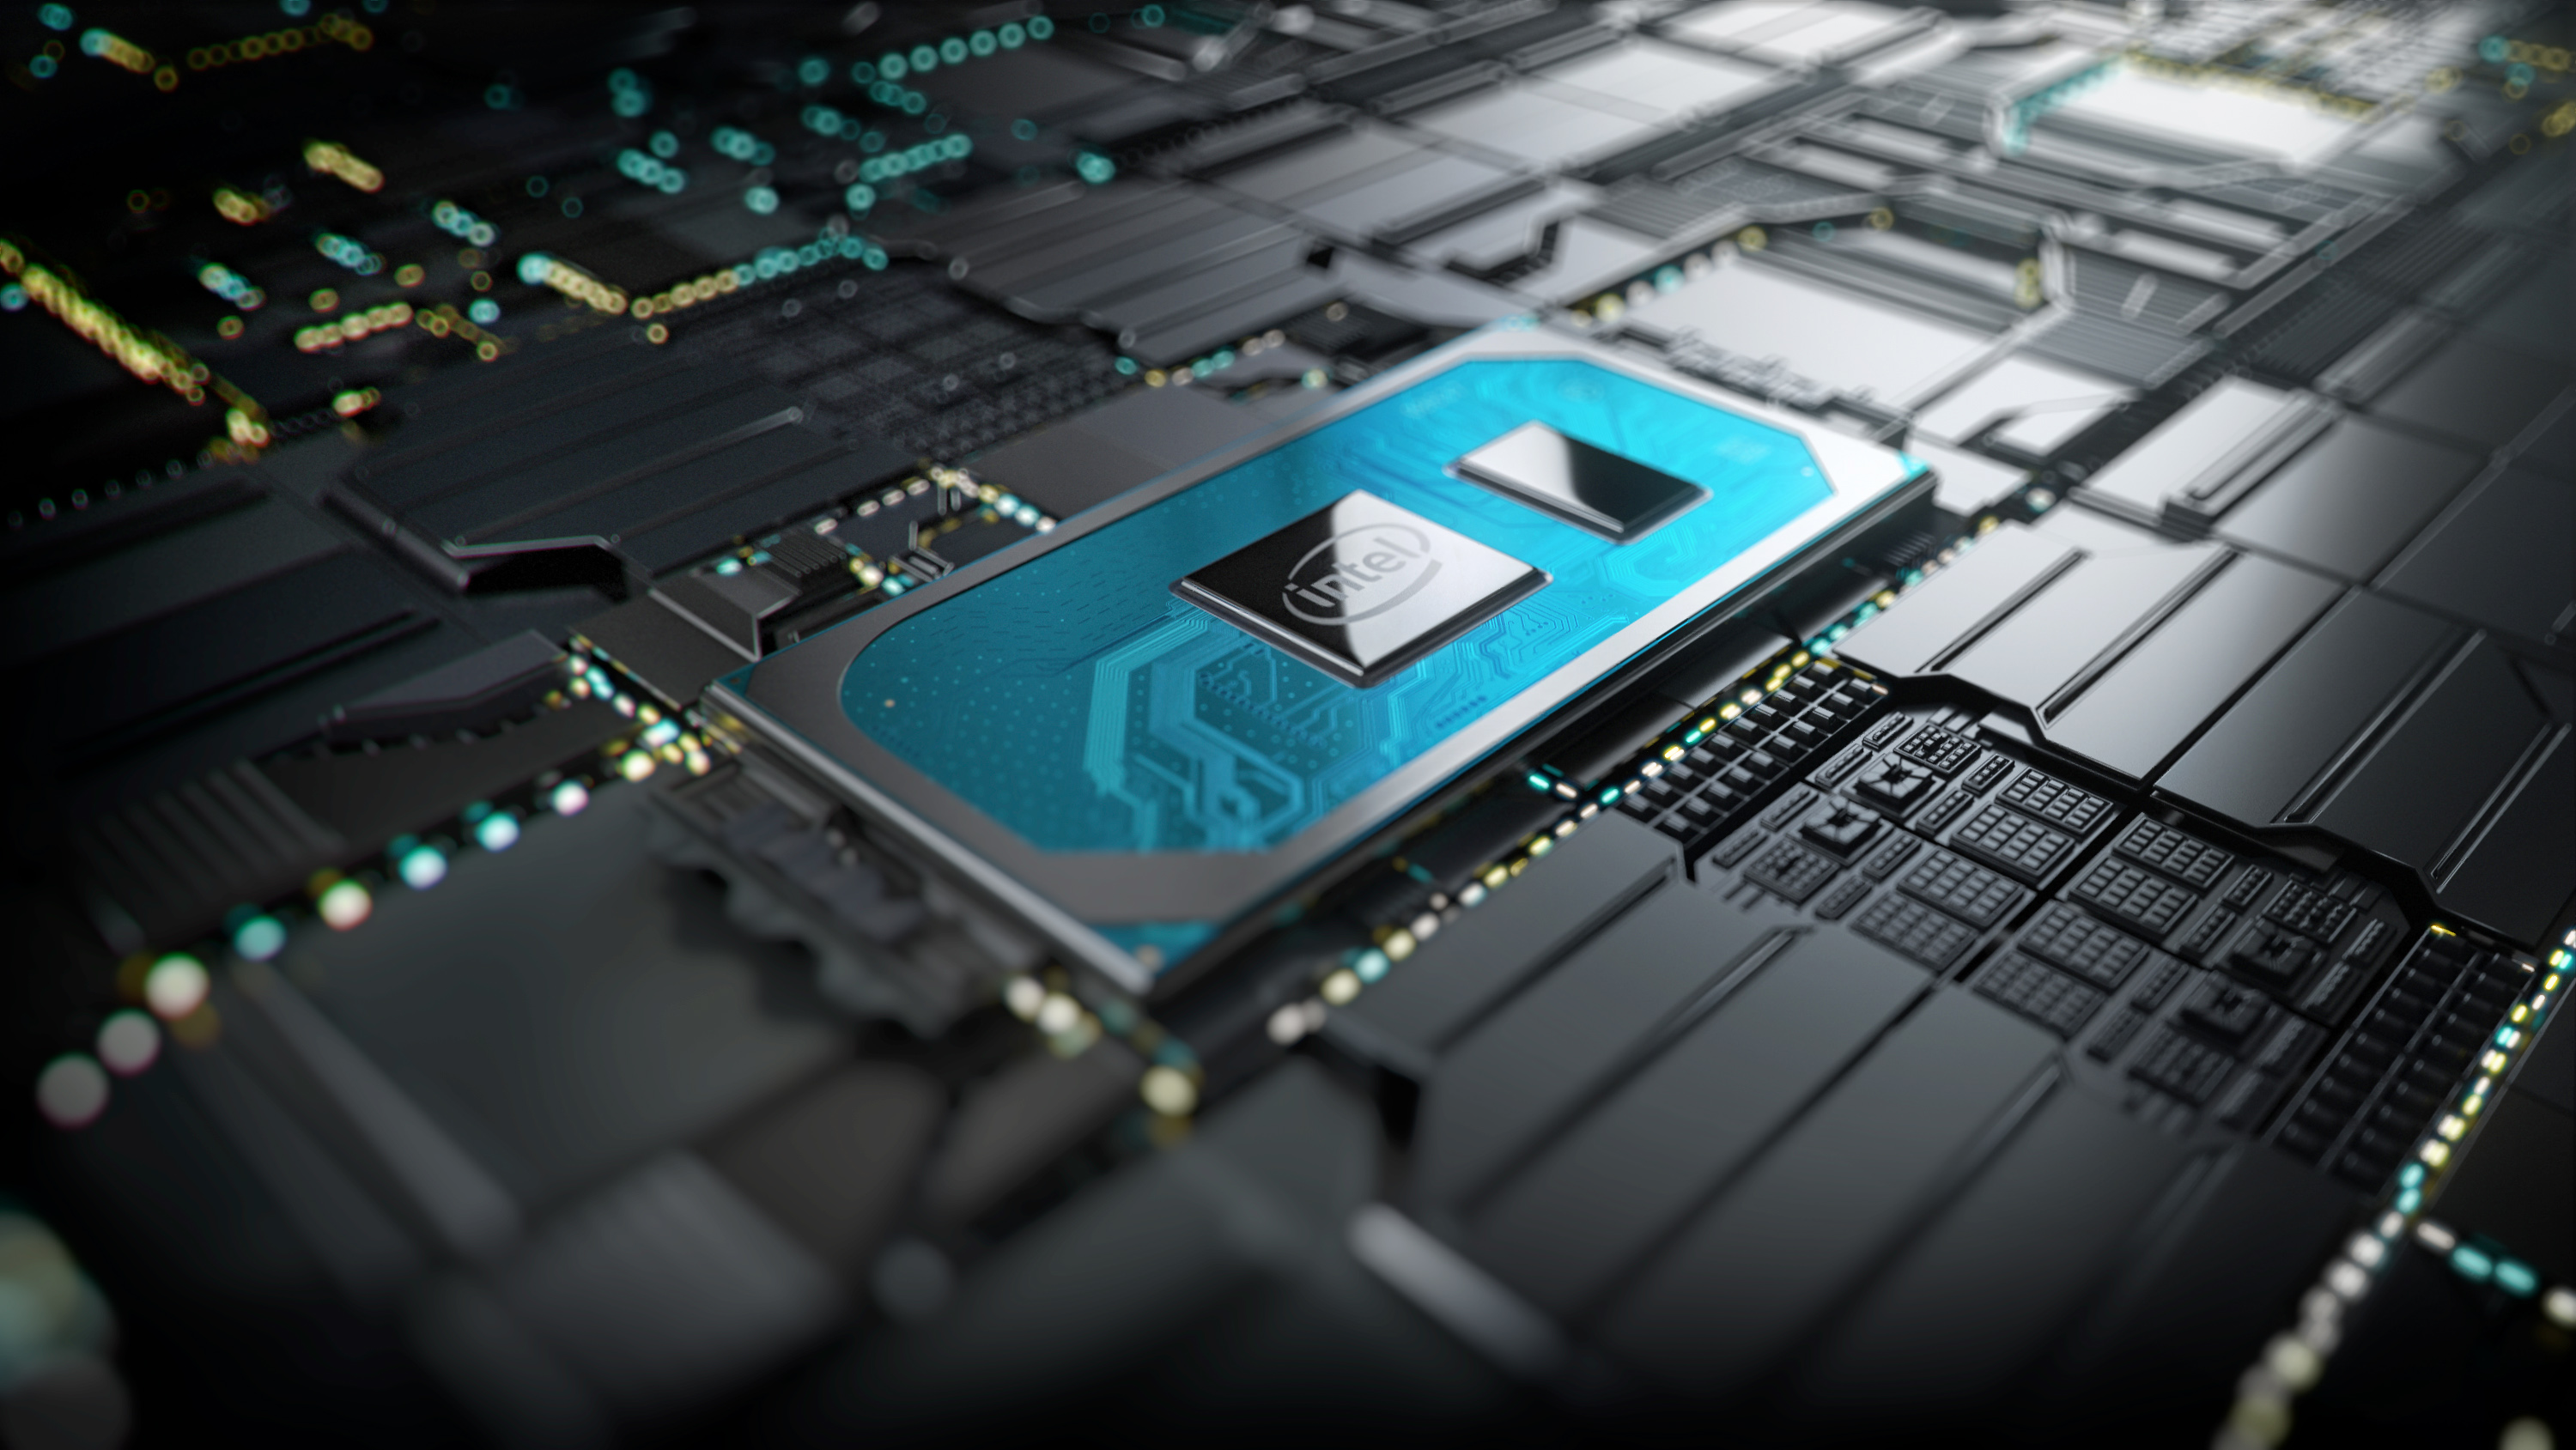 Intel wycofuje z rynku procesor Xeon E-2274G. Powodem jest nieodpowiedni ukad chodzenia